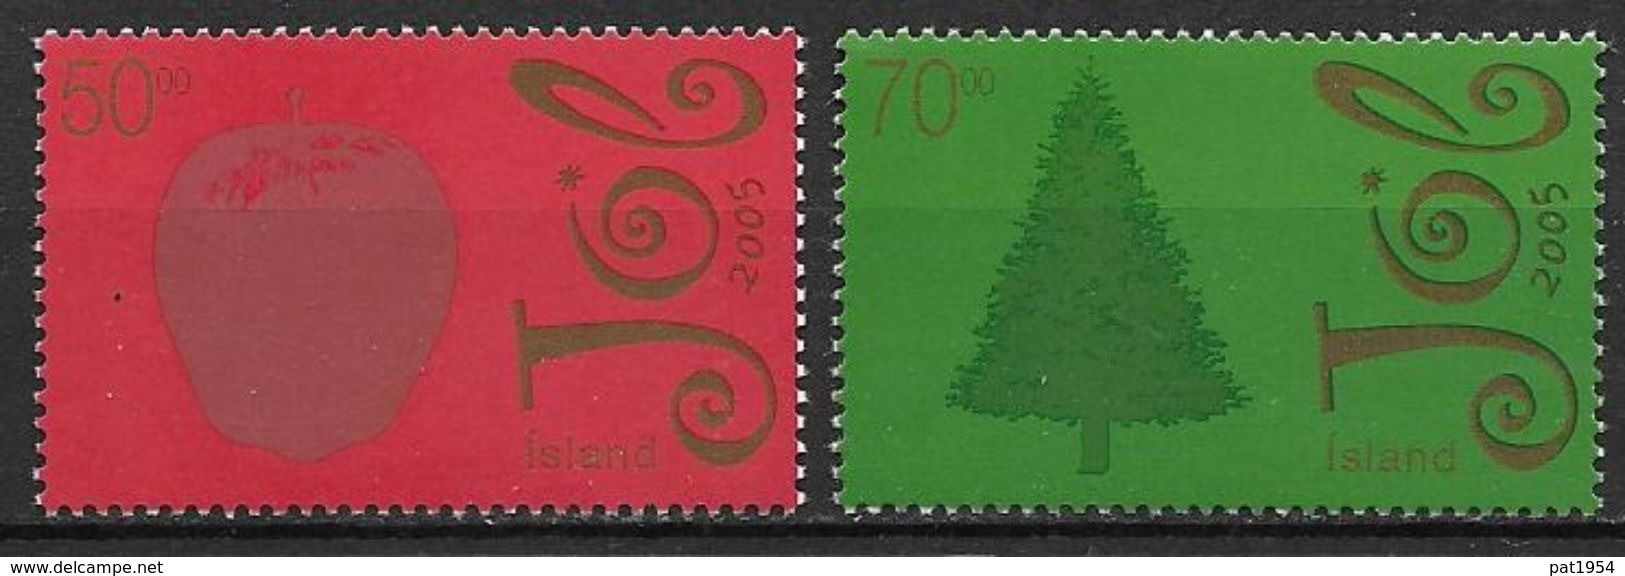 Islande 2005 N°1041/1042 Neufs** Noël - Neufs